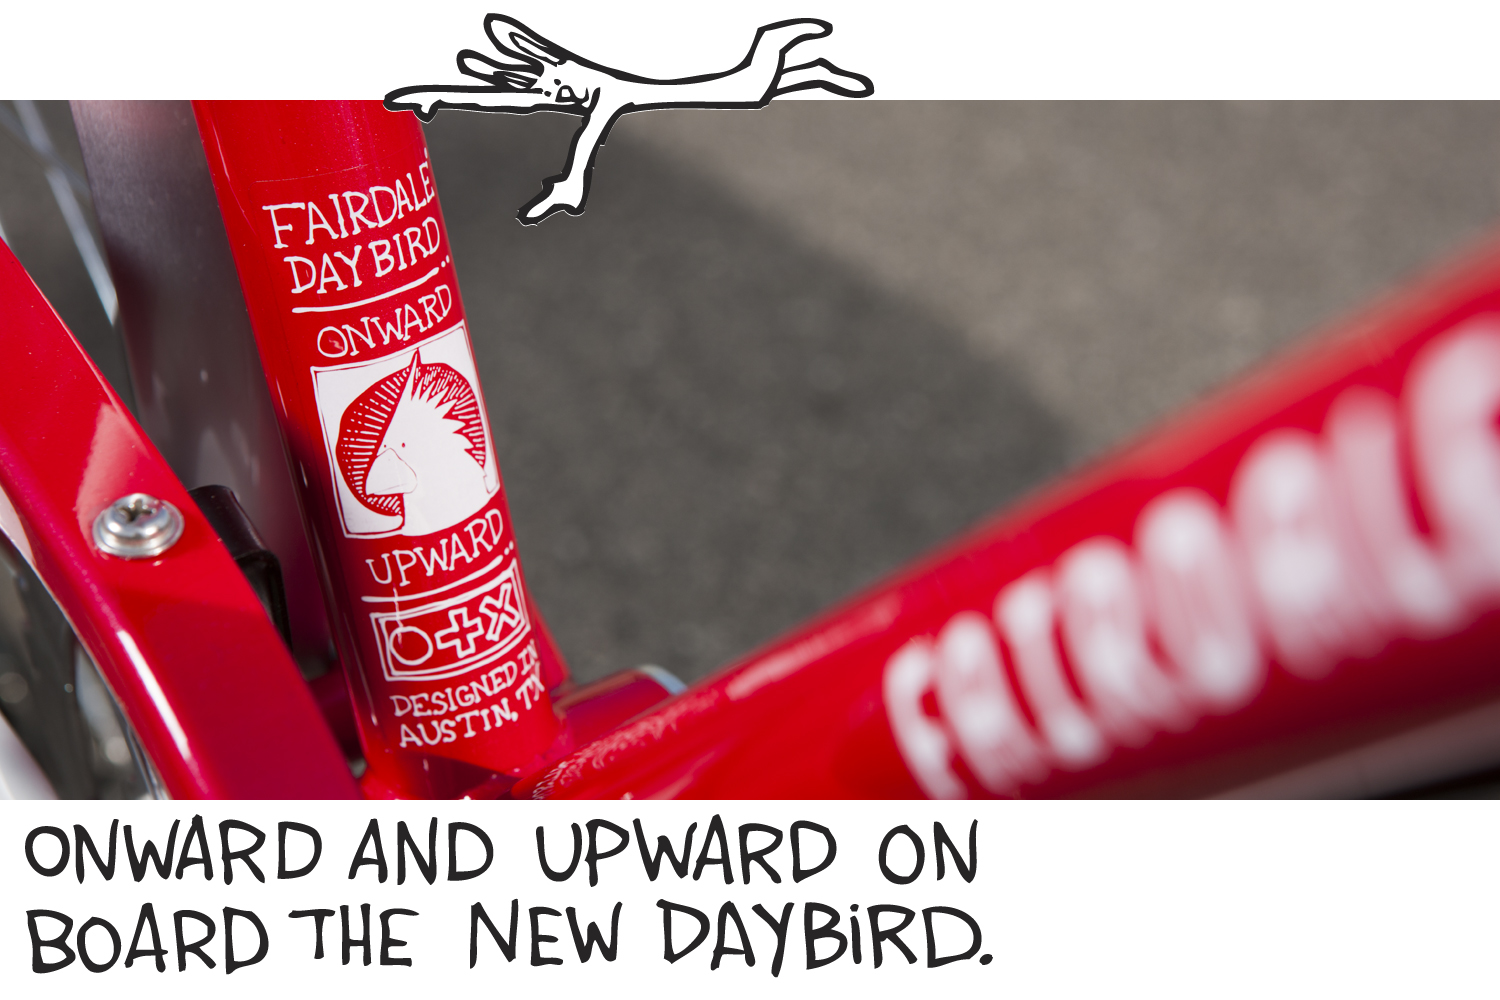 fairdale-bikes-weekender-red-daybird-024